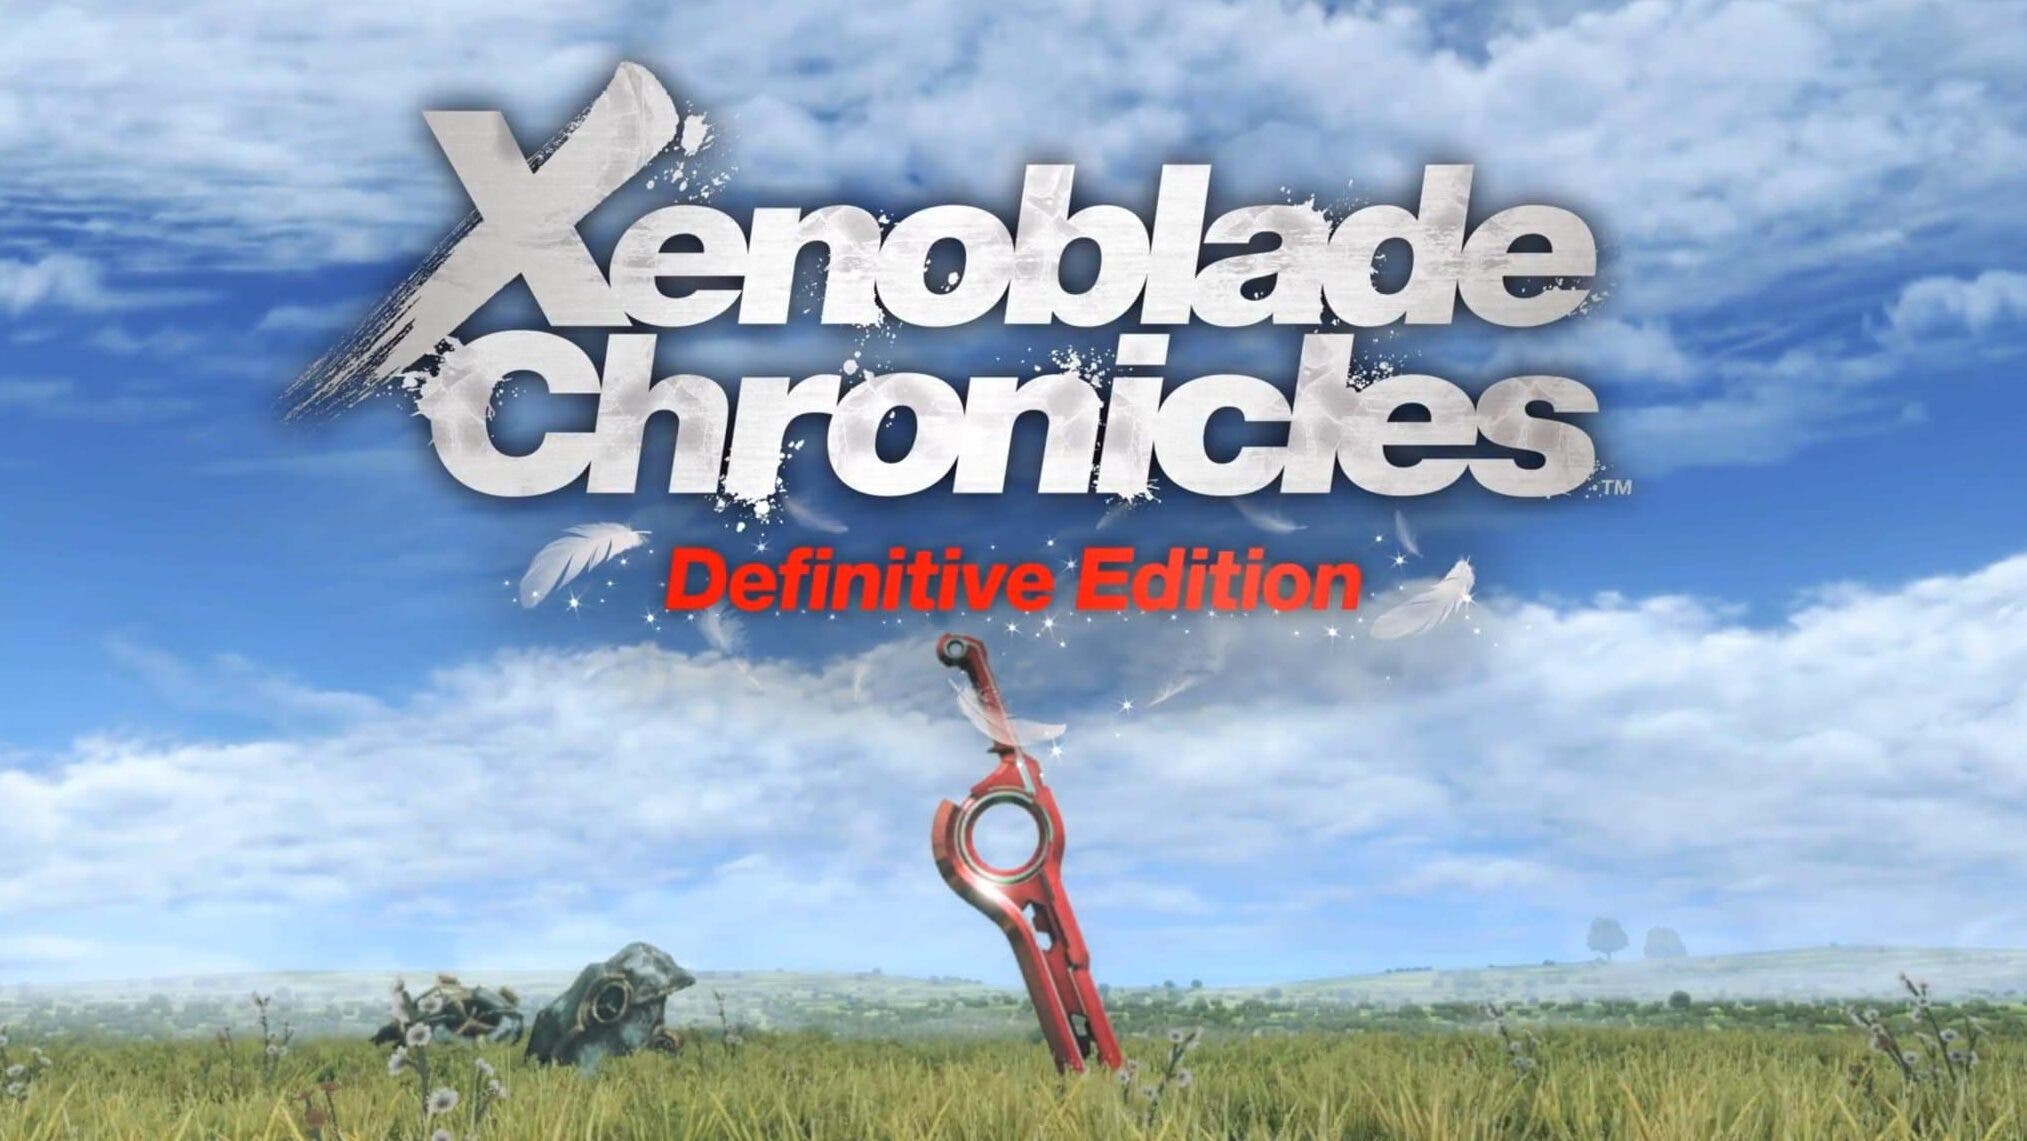 Tráiler de lanzamiento de Xenoblade Chronicles: Definitive Edition